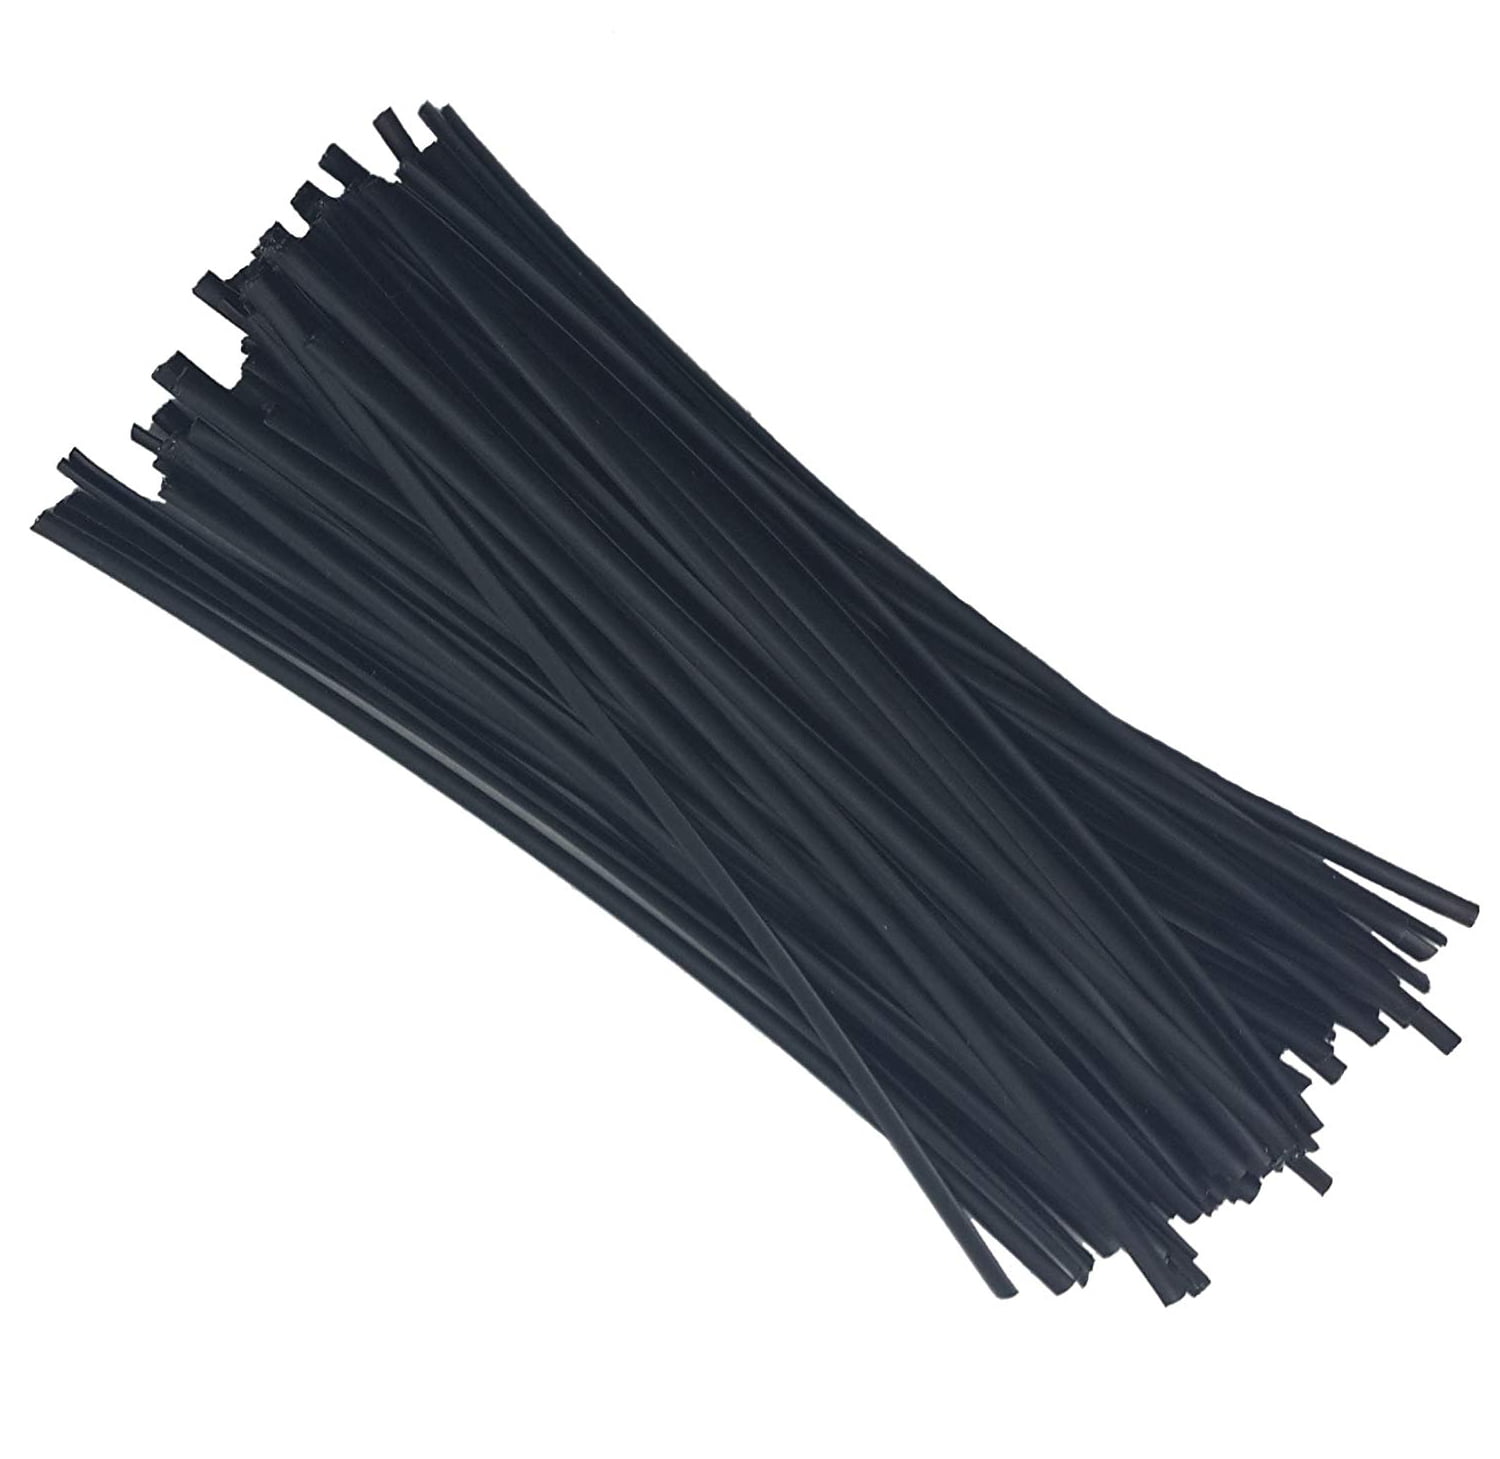 100X Black White Nylon Plastic Cable Ties Zip Tie Self Lock Wraps Reusable DIY 